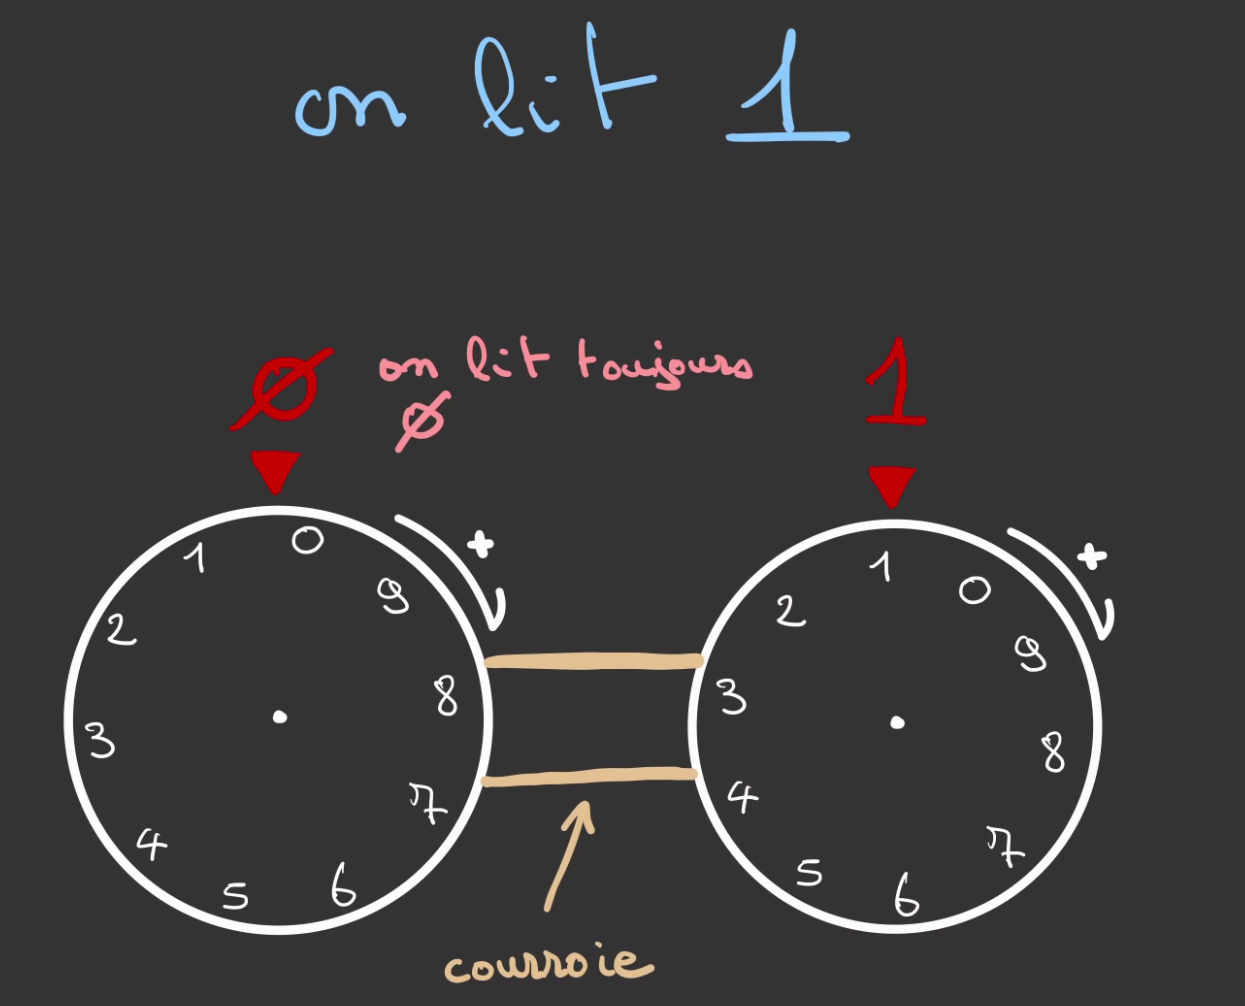 Deux roues graduées de 0 à 9 reliée par une courroie, en allant de gauche à droite, la première affiche, 0 la seconde 1